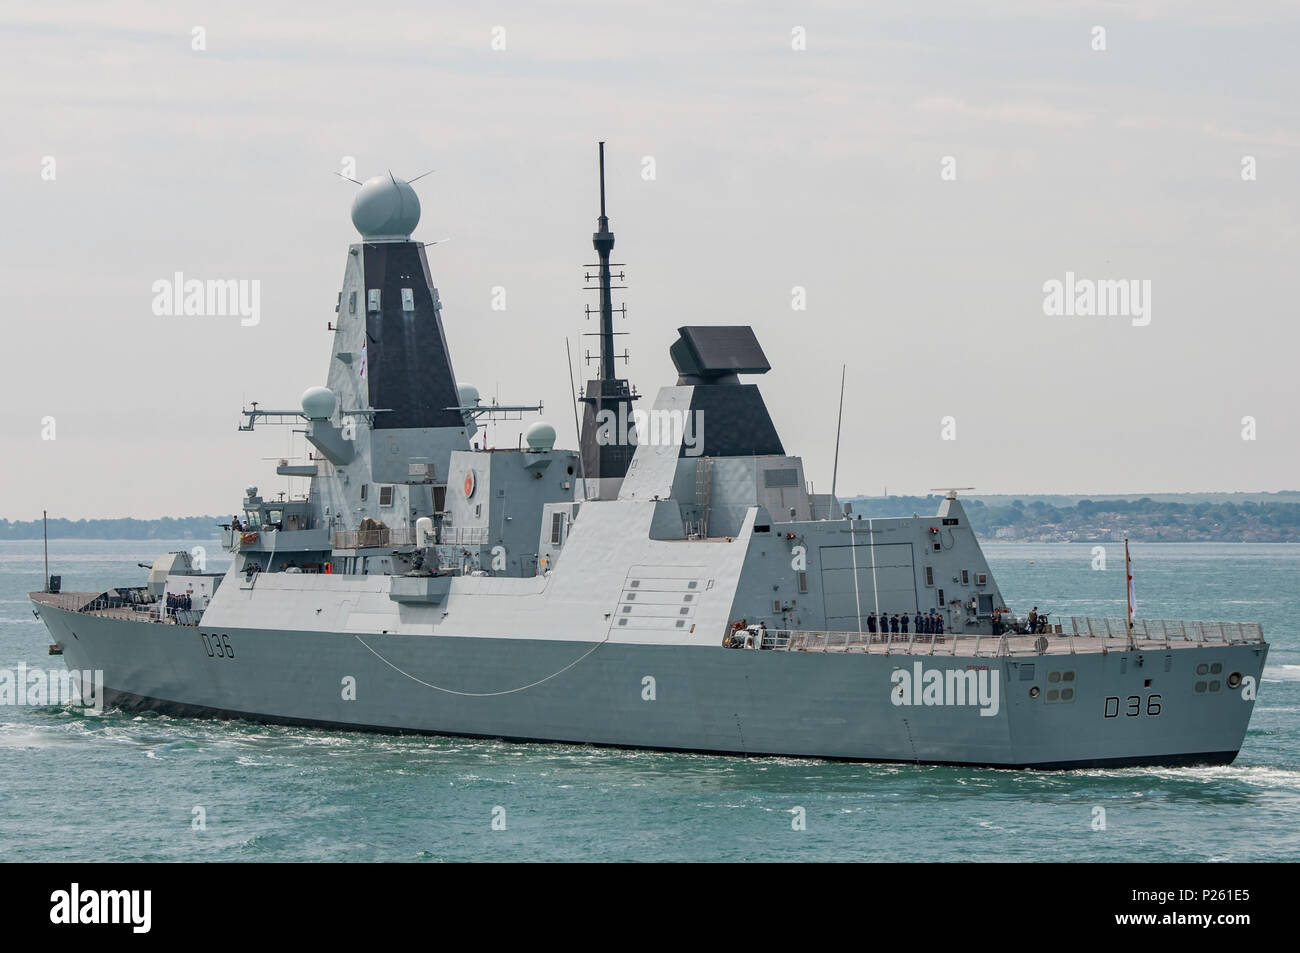 Die britische Royal Navy gewagte Klasse Typ 45 air defence Zerstörer HMS Defender (D 36) Abflug Portsmouth, Großbritannien am 11. Juni 2018. Stockfoto